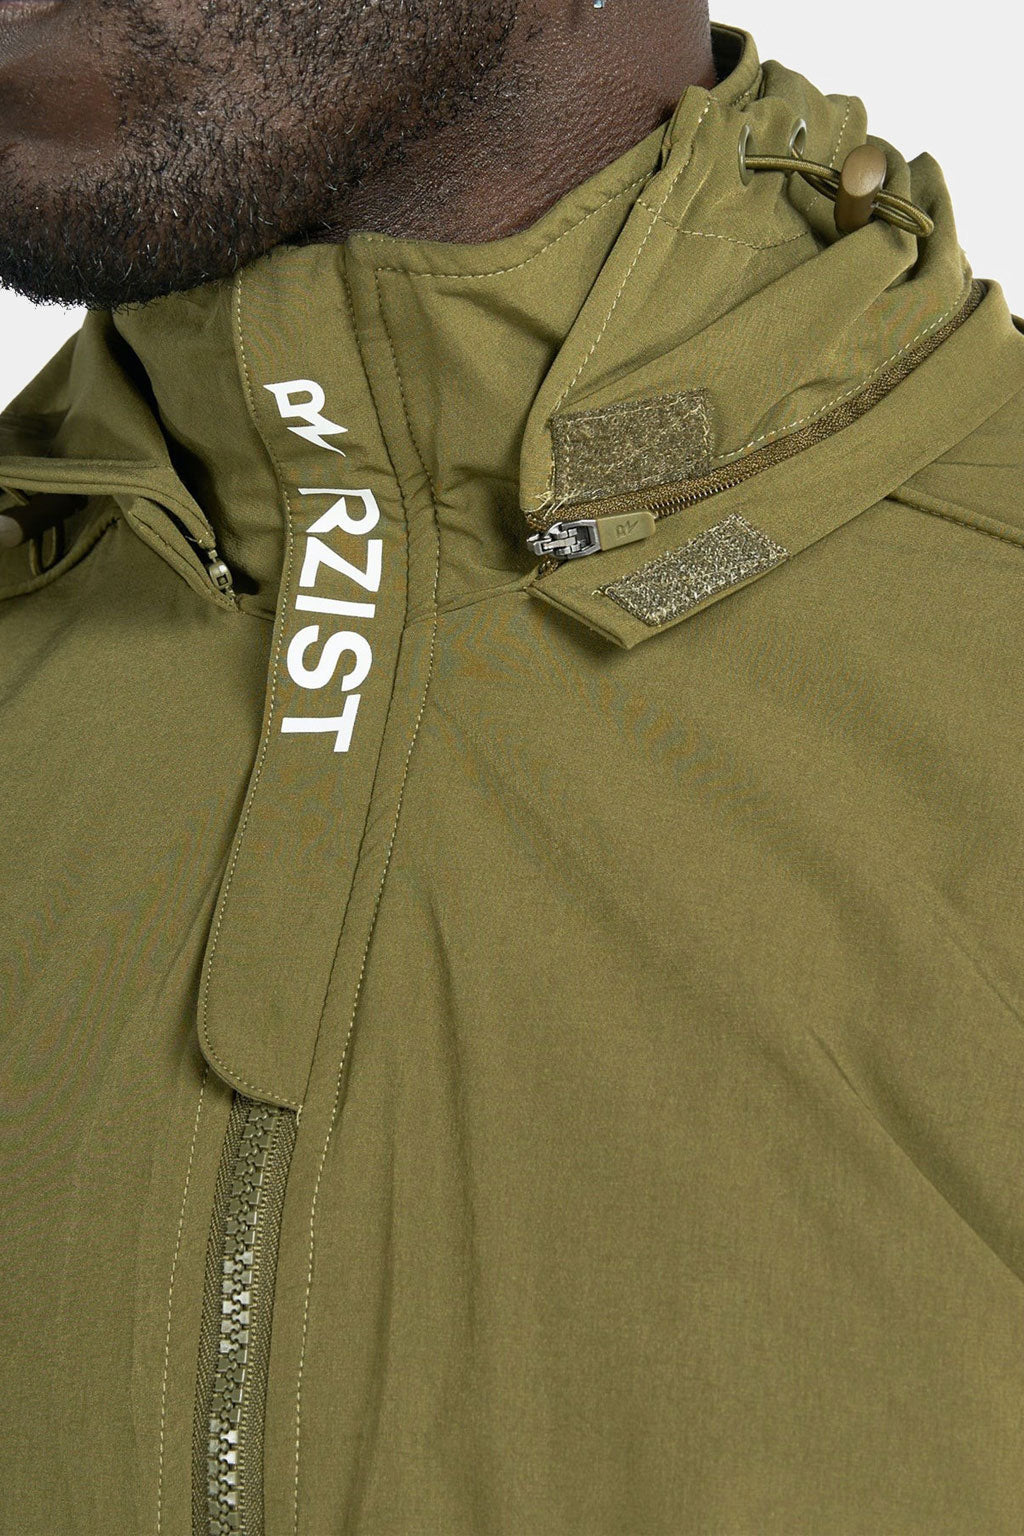 Rzist - Unisex Capulet Olive Hooded Bomber Jacket